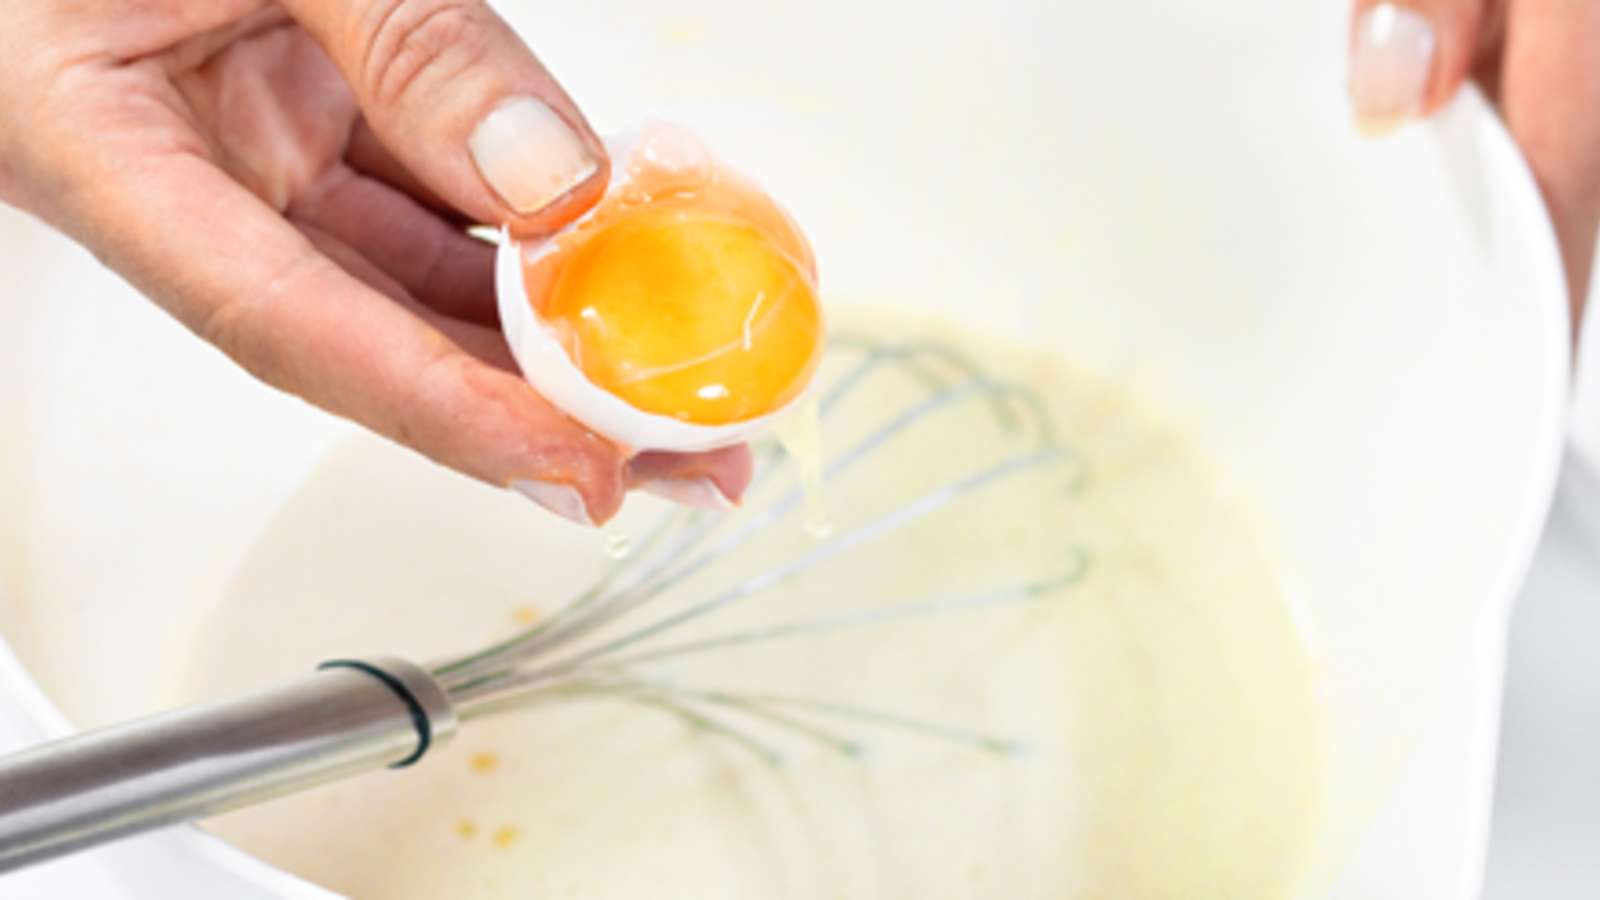 Erottele kananmunan valkuainen ja -keltuainen toisistaan. Vatkaa keltuainen taikinaan ja jätä valkuainen odottamaan. Kohota taikinaa peitettynä huoneenlämmössä tunnin ajan.